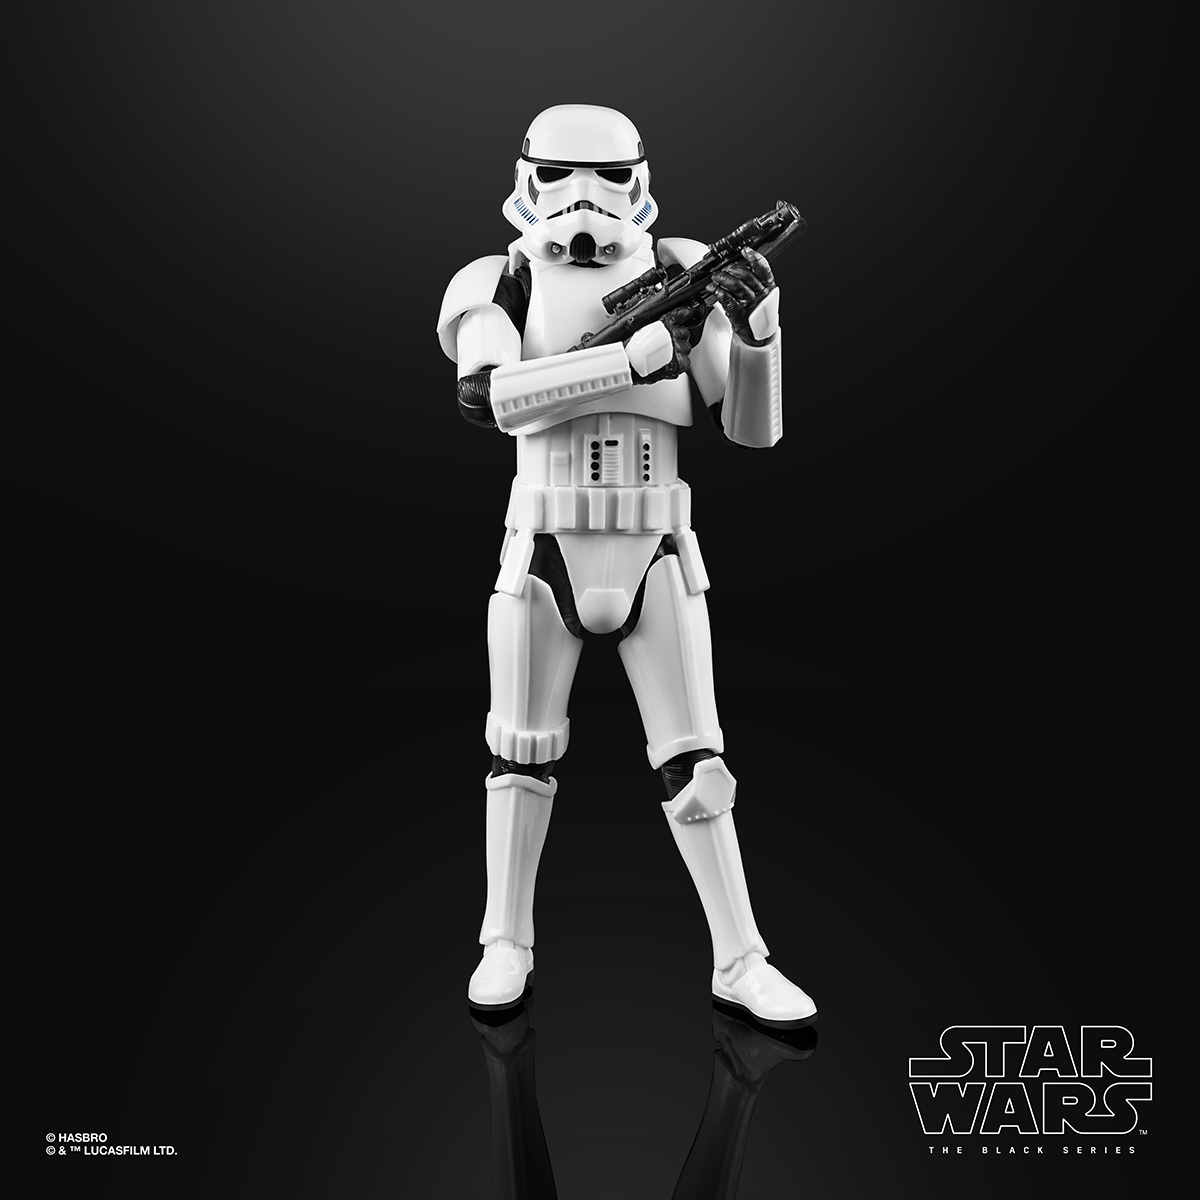 Star Wars The Black Series 6 Inch Imperial Stormtrooper Figure Oop 4